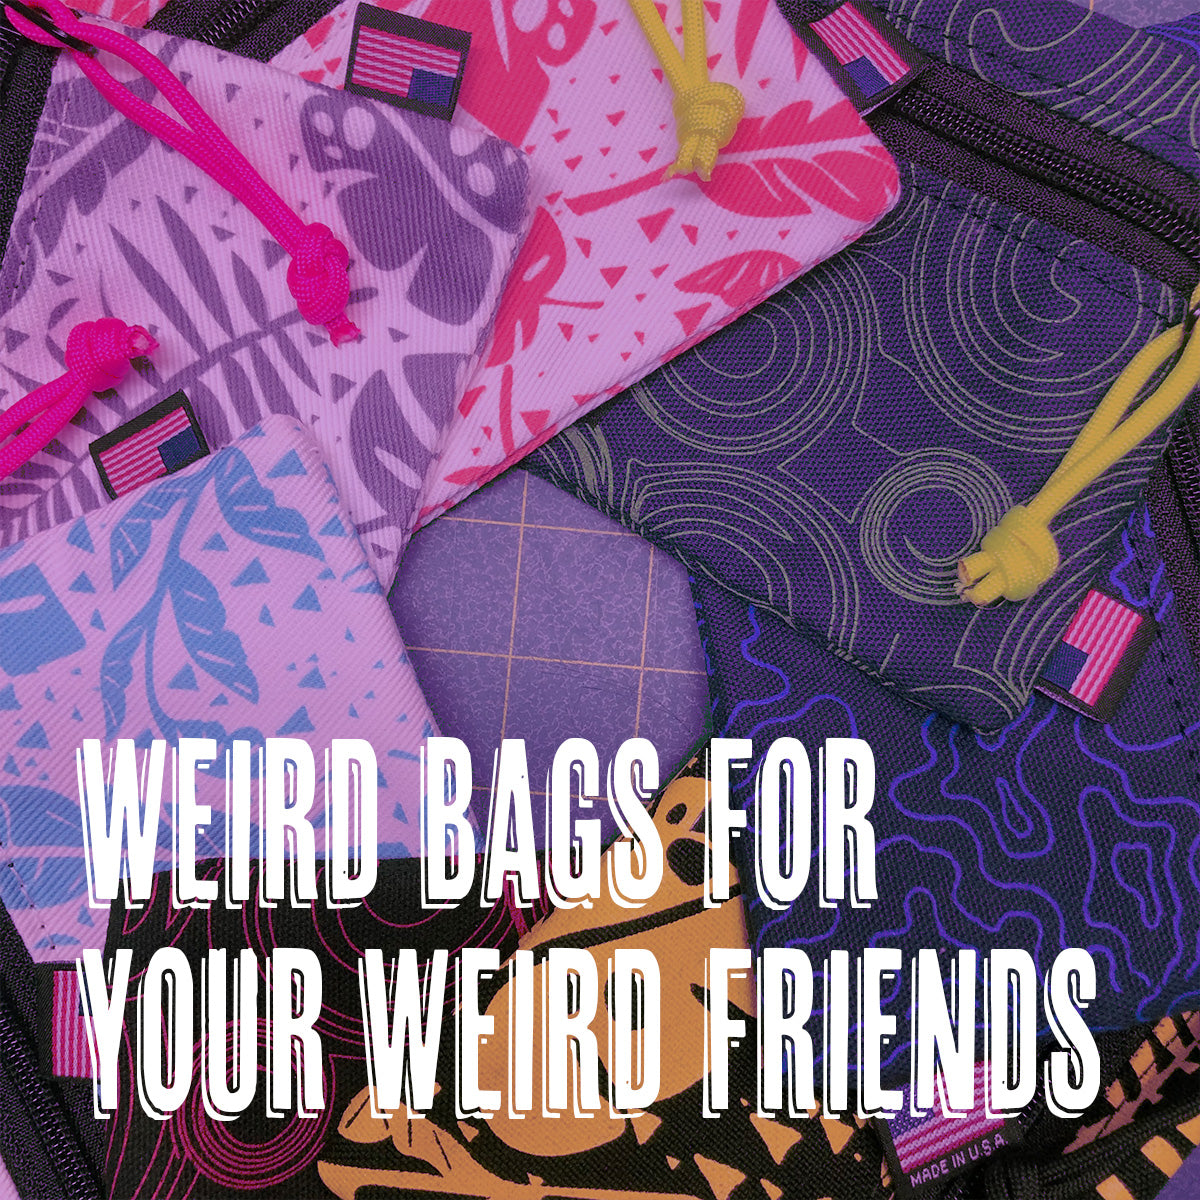 Weirdo Bags for Your Weirdo Friends!